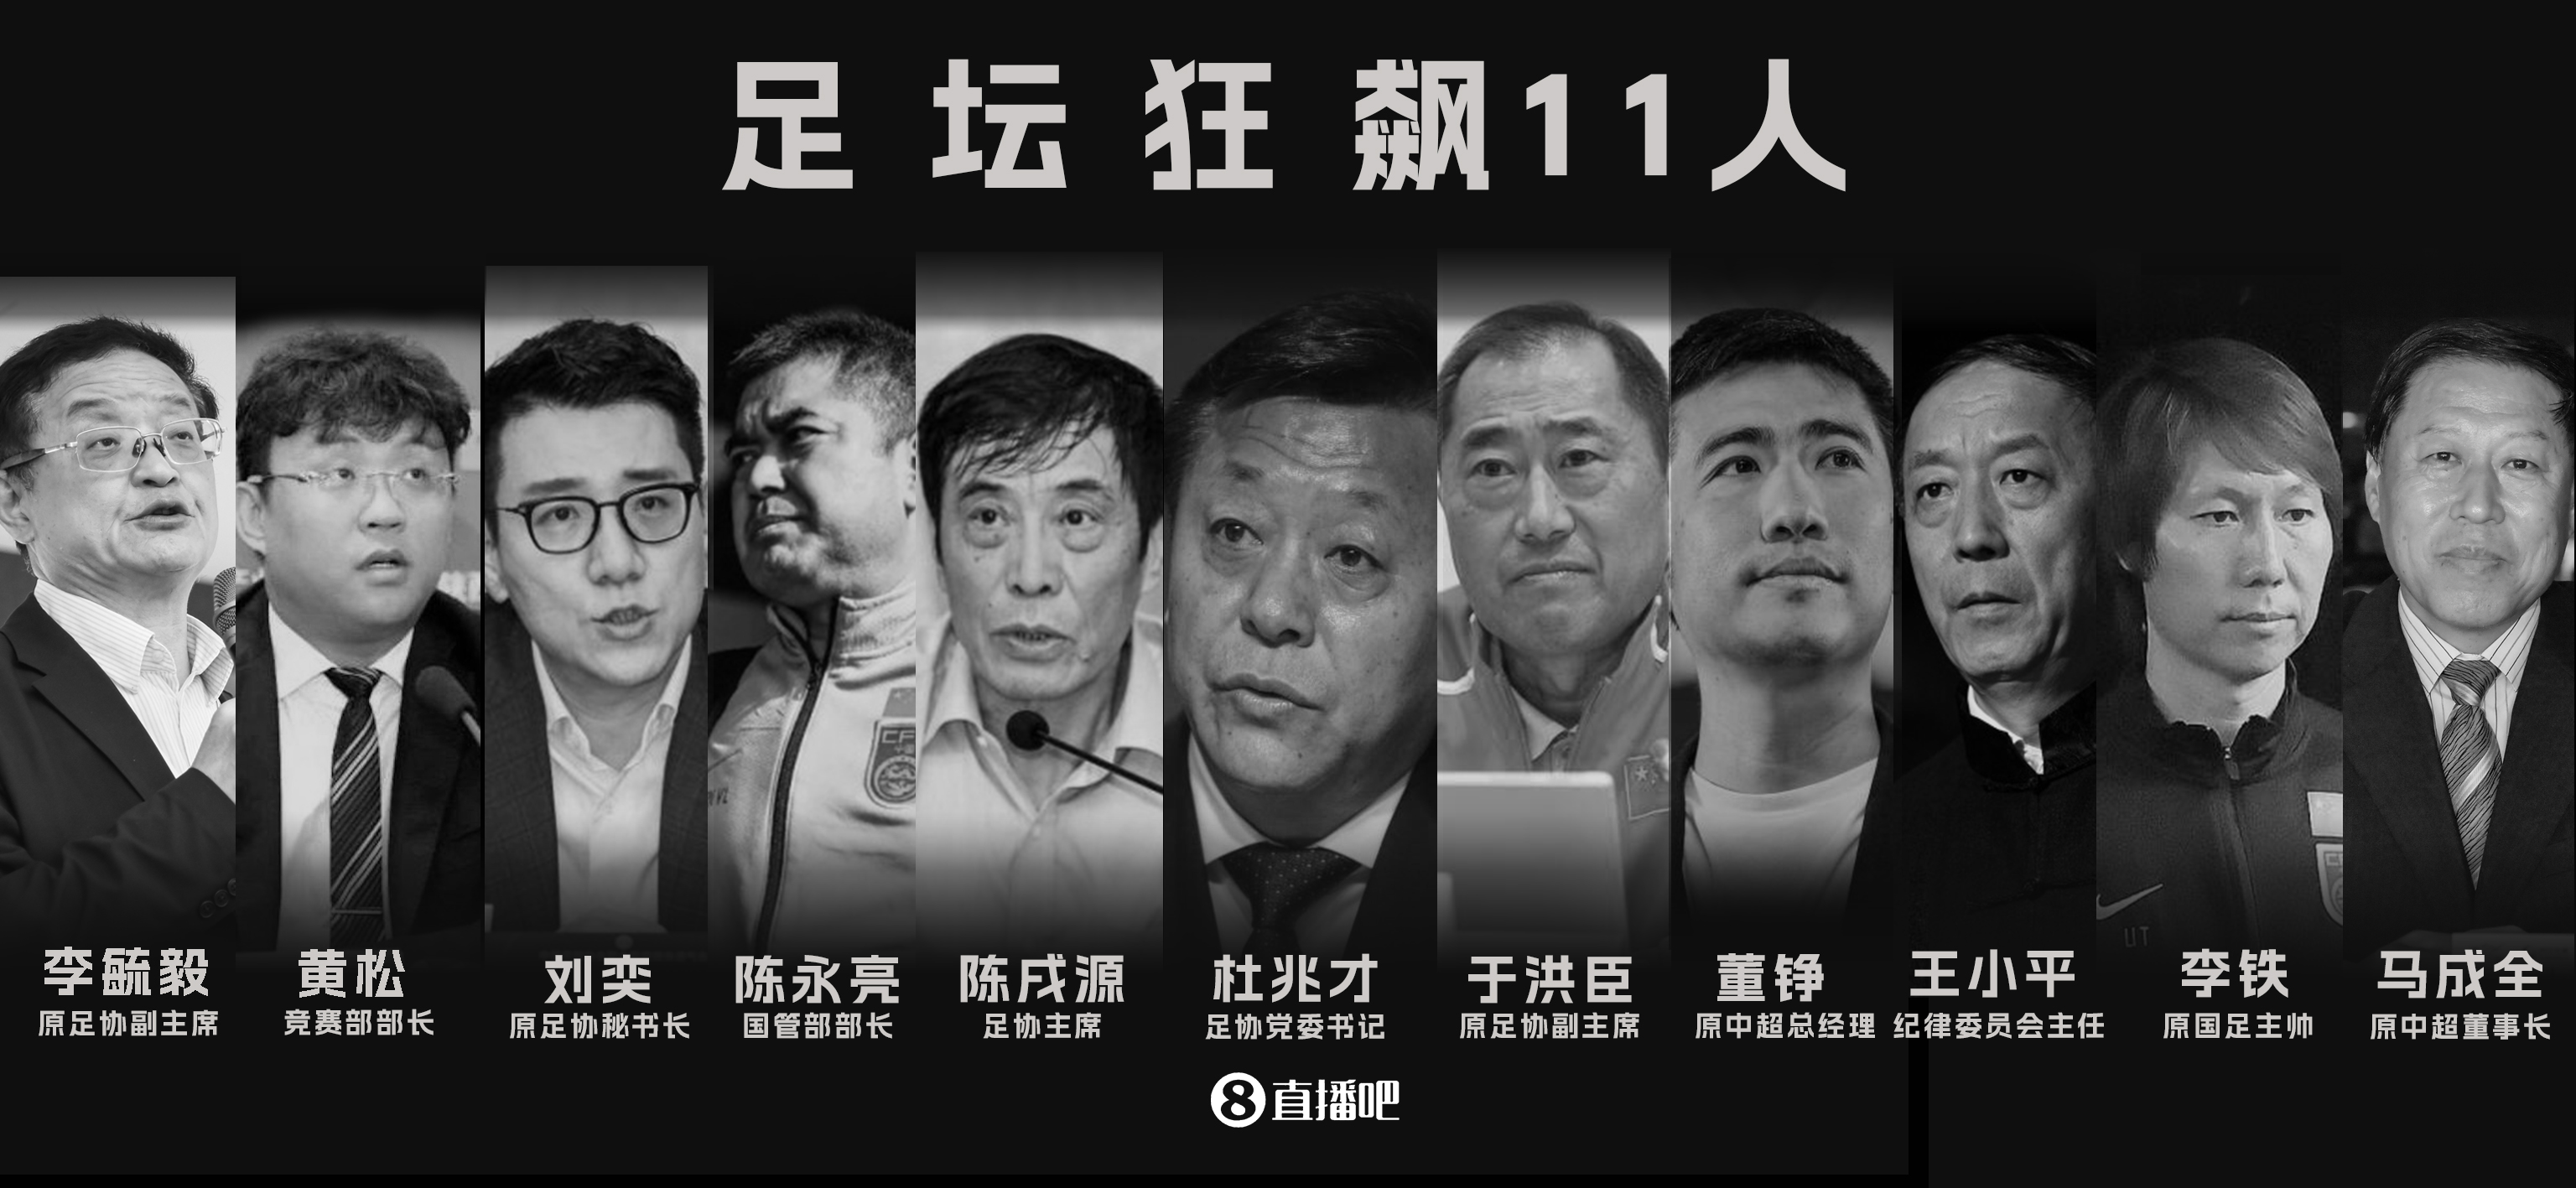 下一个是谁？！中国足球反腐打假，已经有13人被查！?